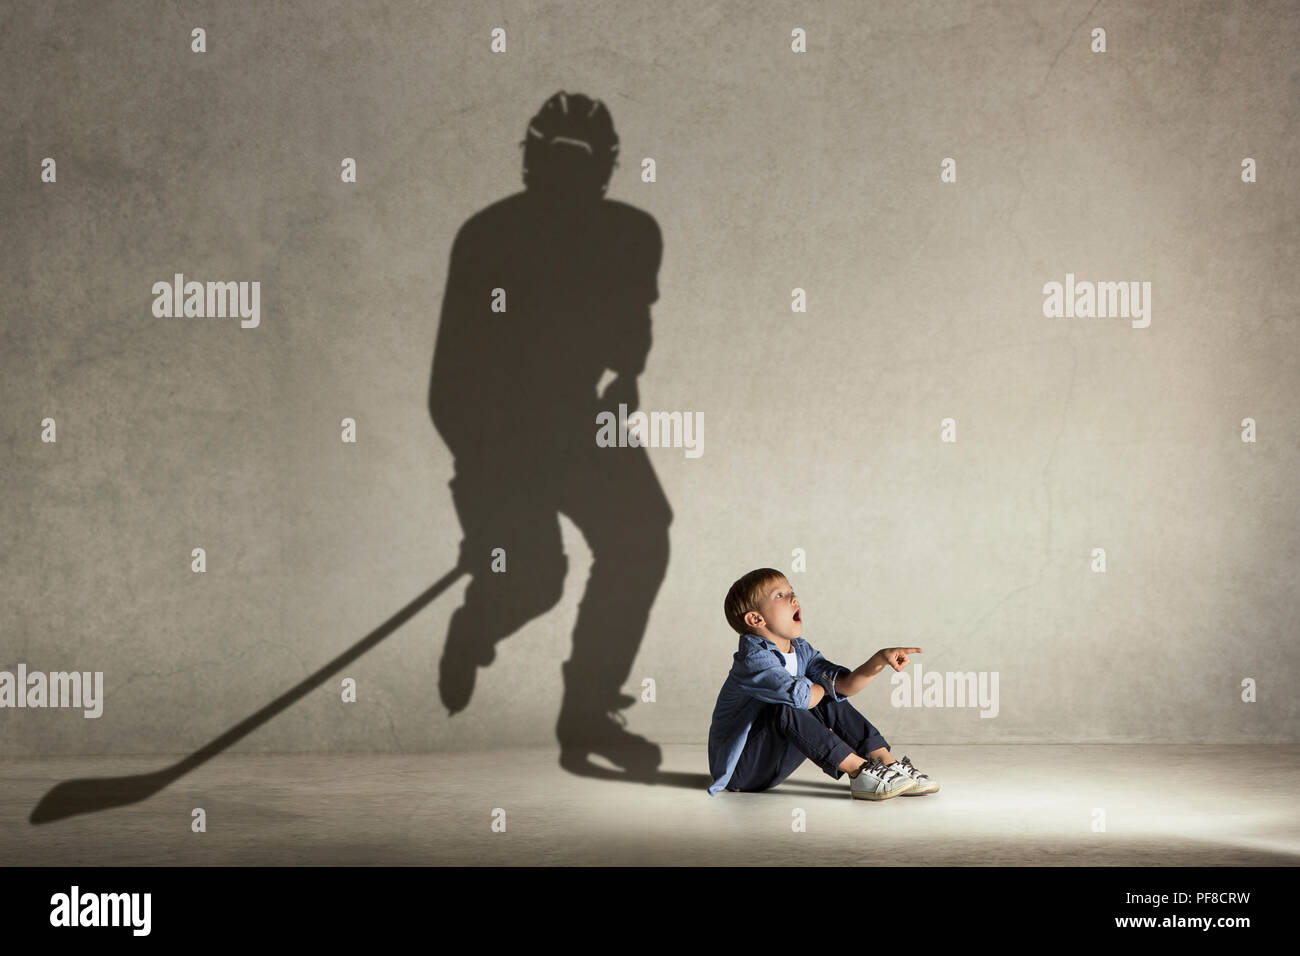 Champion de hockey sur glace. L'enfance et de l'dream concept. Image conceptuelle avec boy et ombre de monter sur le mur de l'athlète studio Banque D'Images